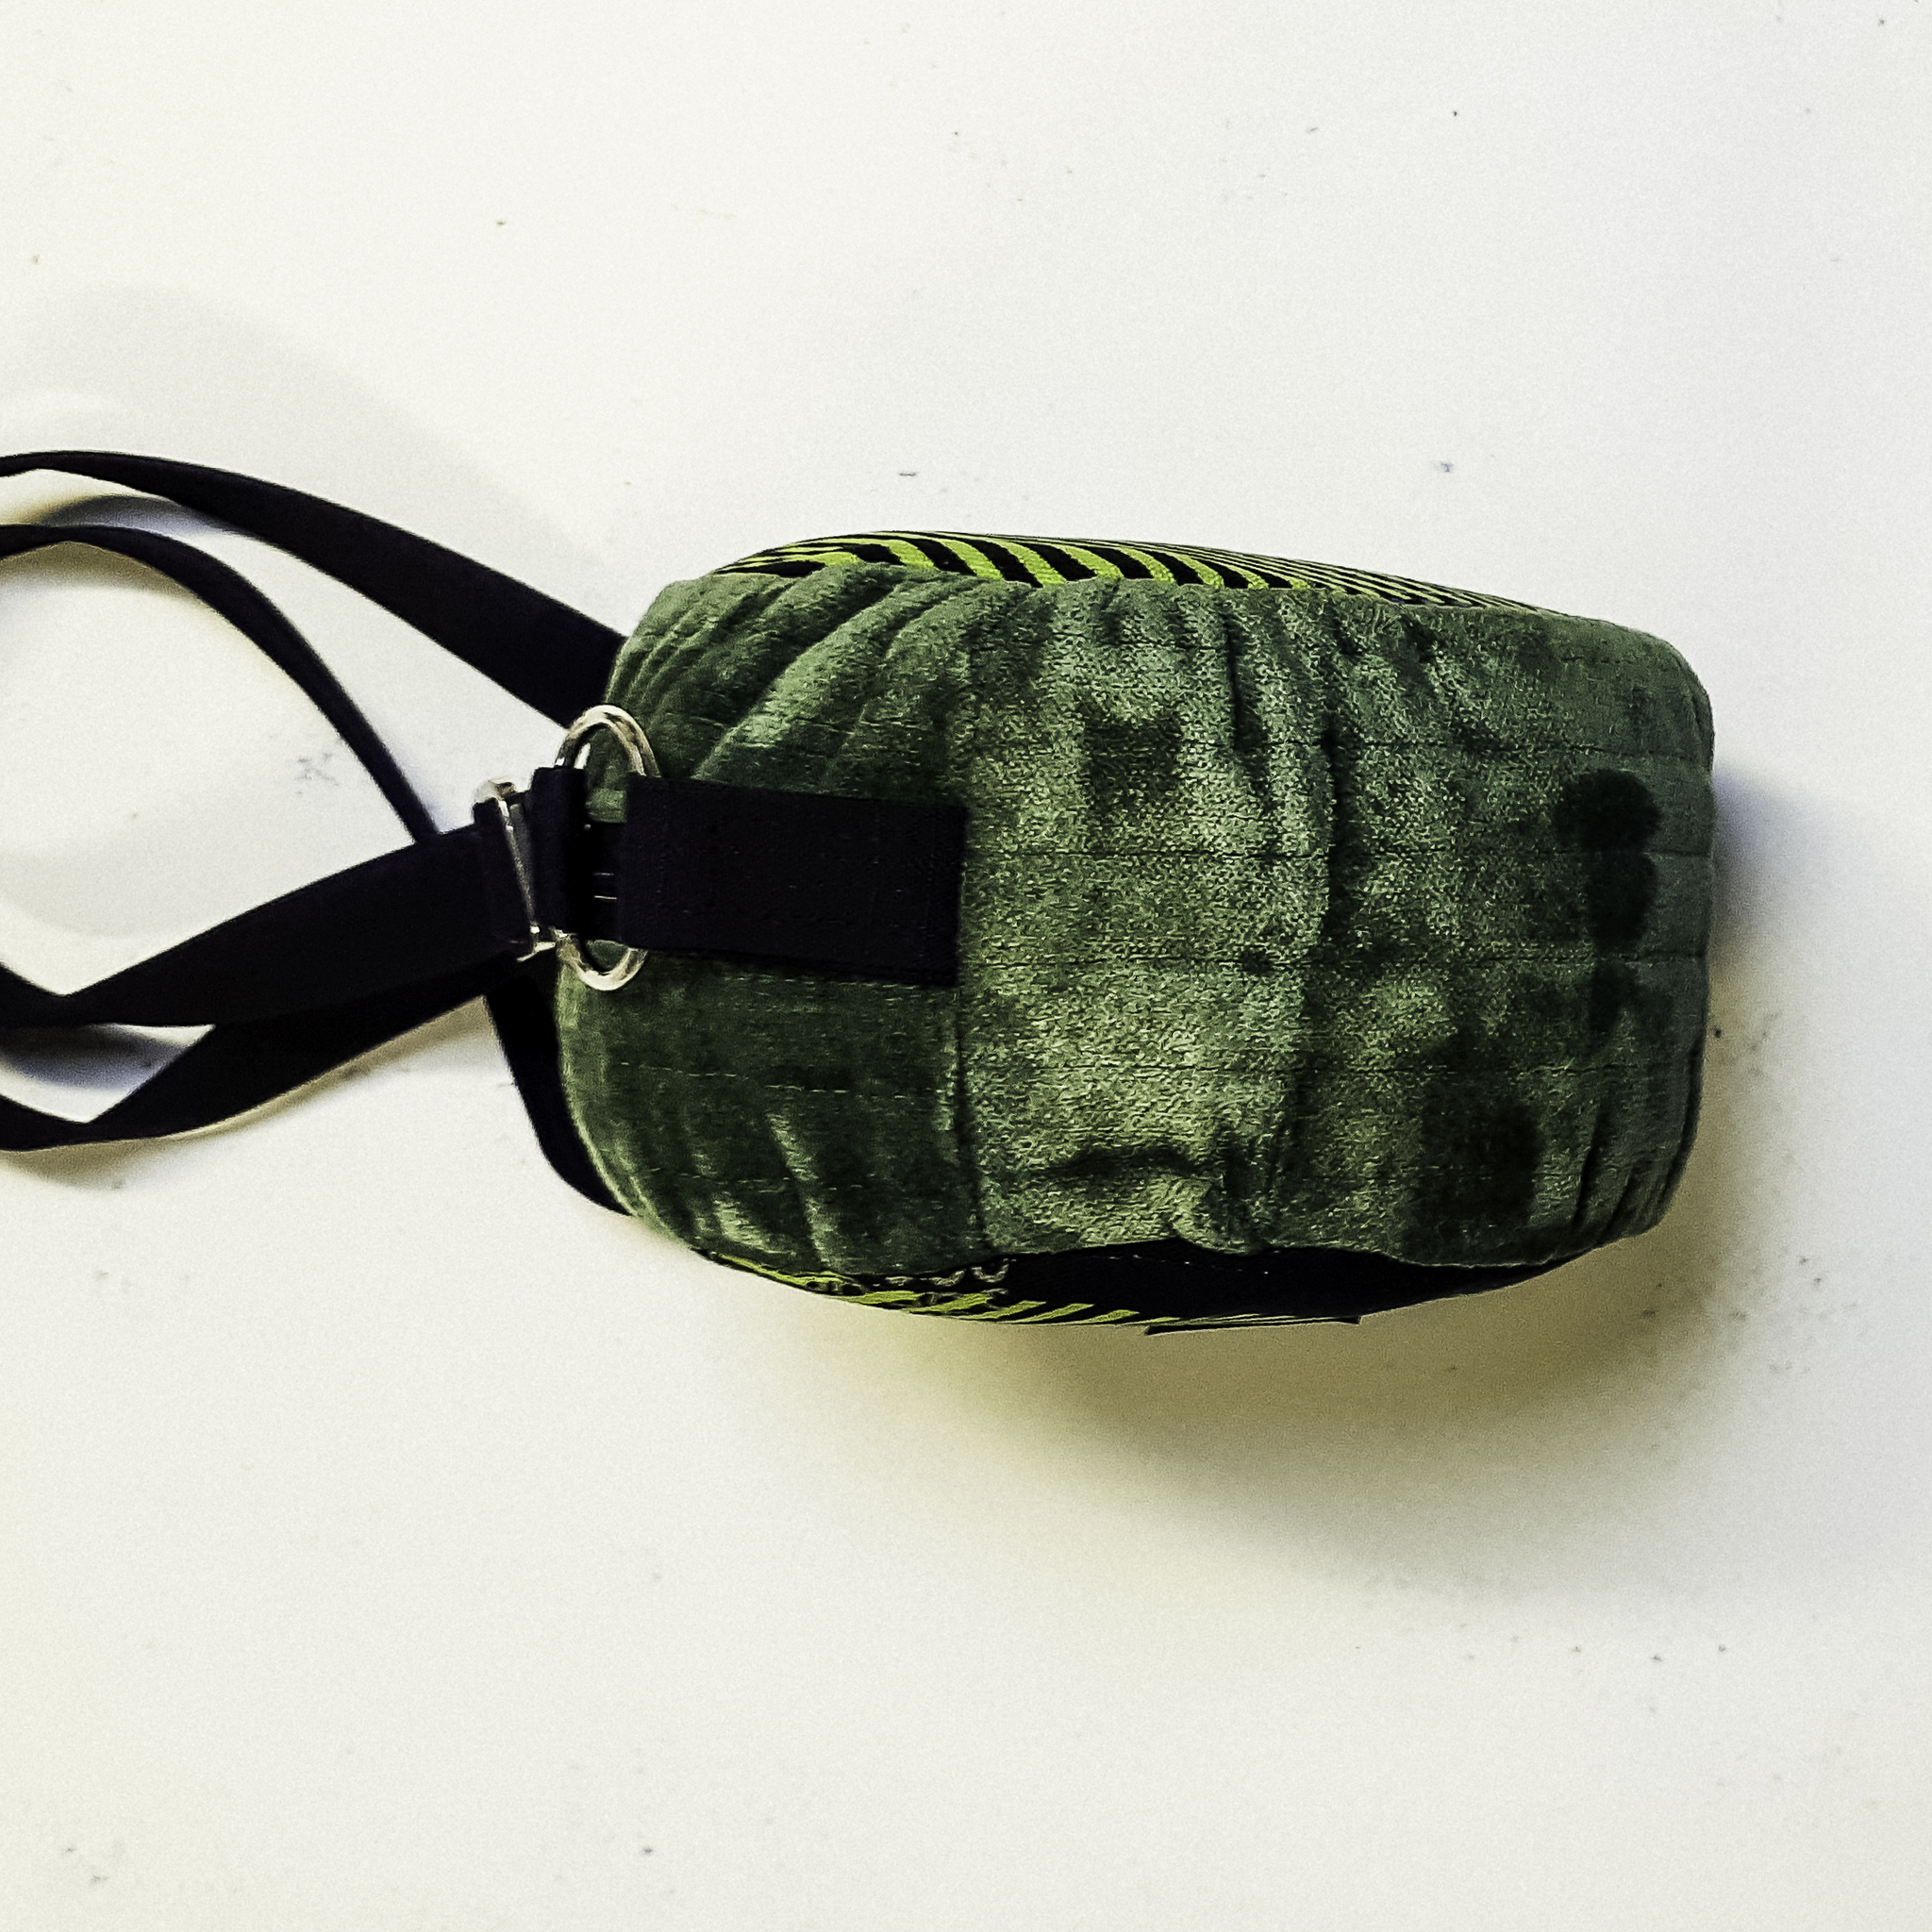 Rund väska sedd från sidan i grönt "sammetstyg" med svart bärrem